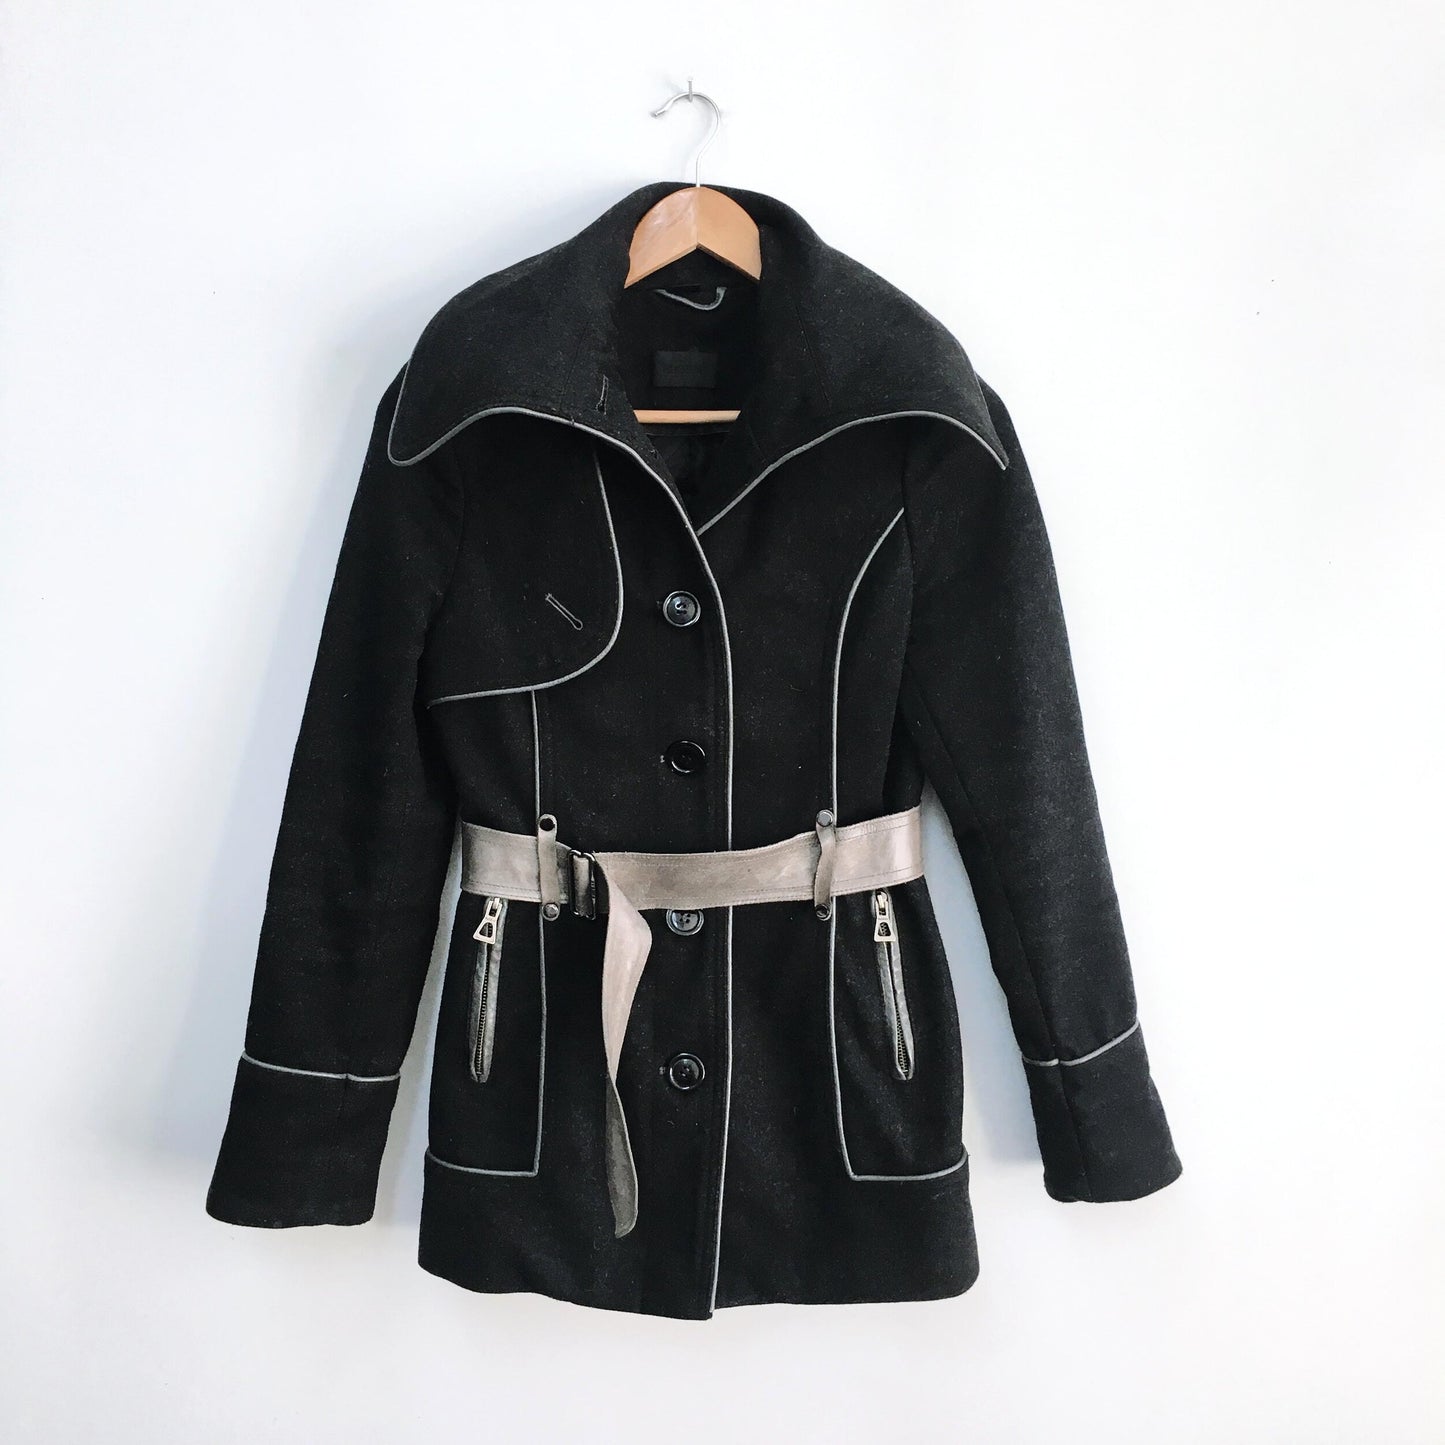 Rudsak Wool Jacket with Leather trim - size xs